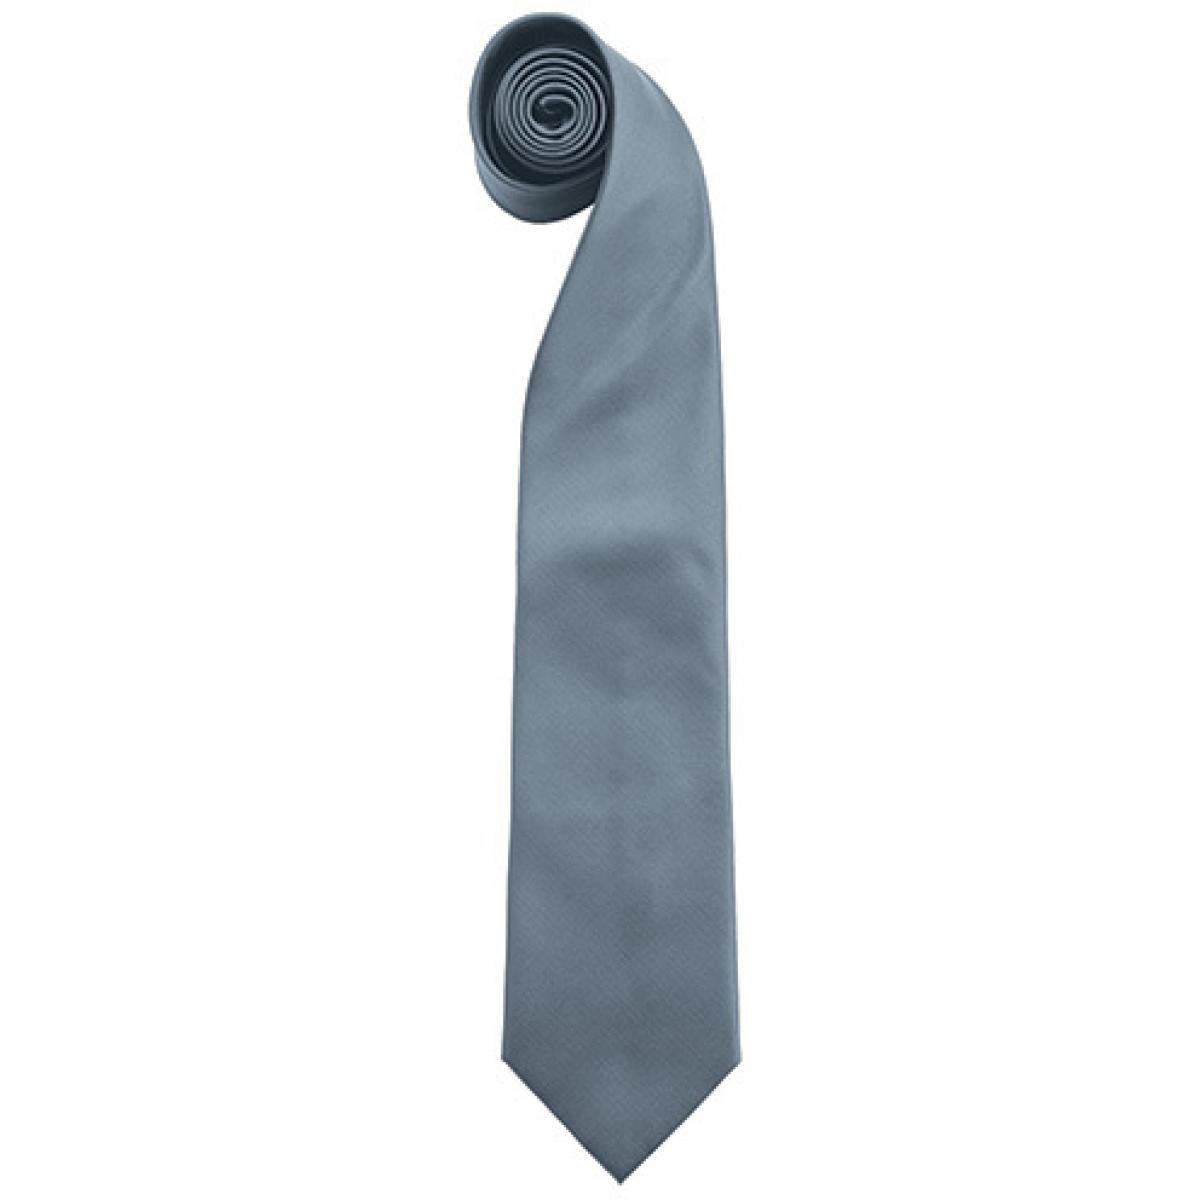 Hersteller: Premier Workwear Herstellernummer: PR765 Artikelbezeichnung: Krawatte Uni-Fashion / Colours Farbe: Grey (ca. Pantone 431C)